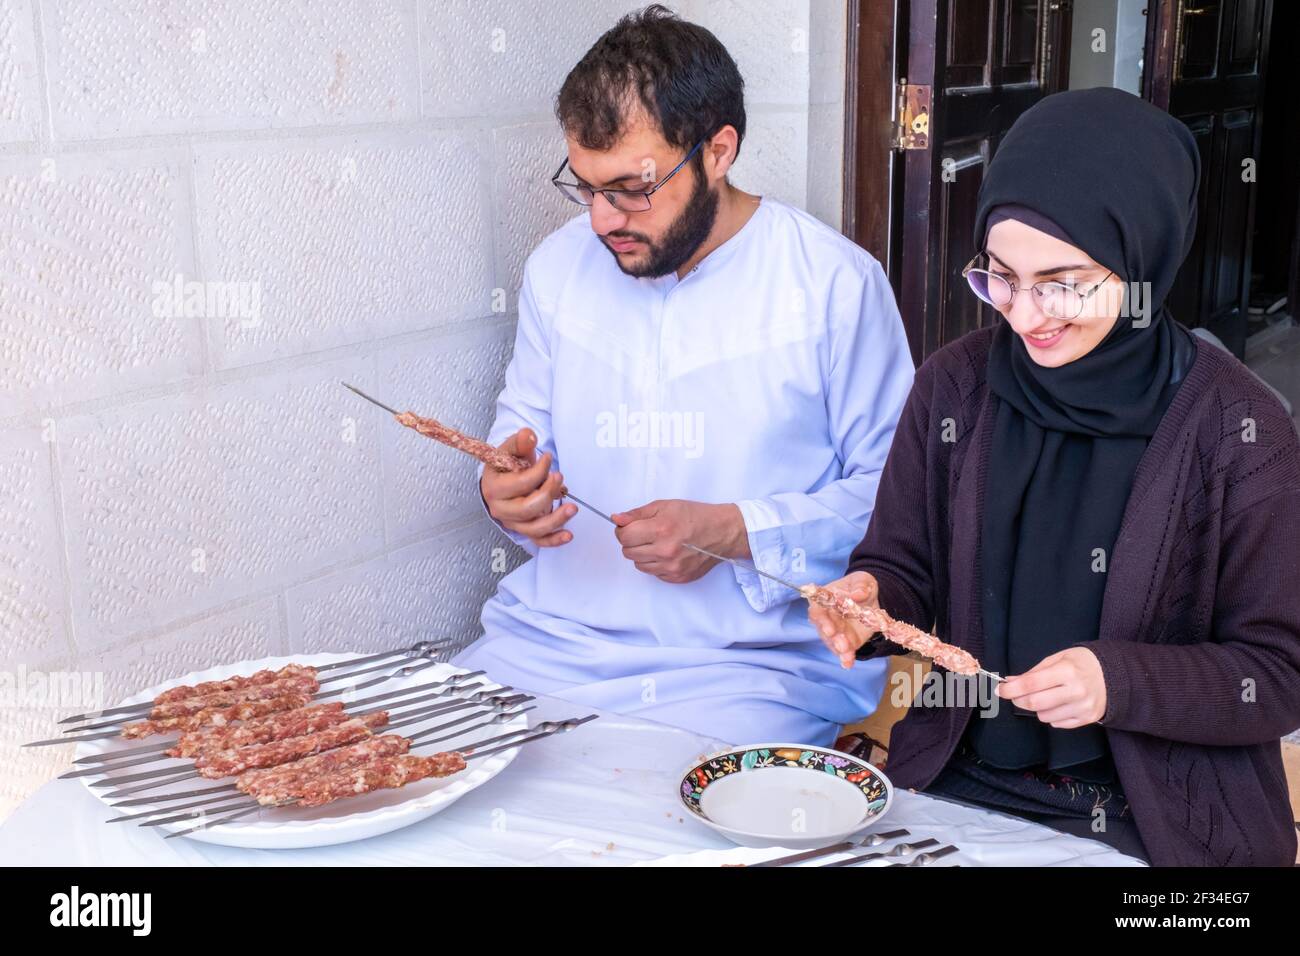 Arabisch-muslimische Familie bereitet sich auf das Grillen vor  Stockfotografie - Alamy